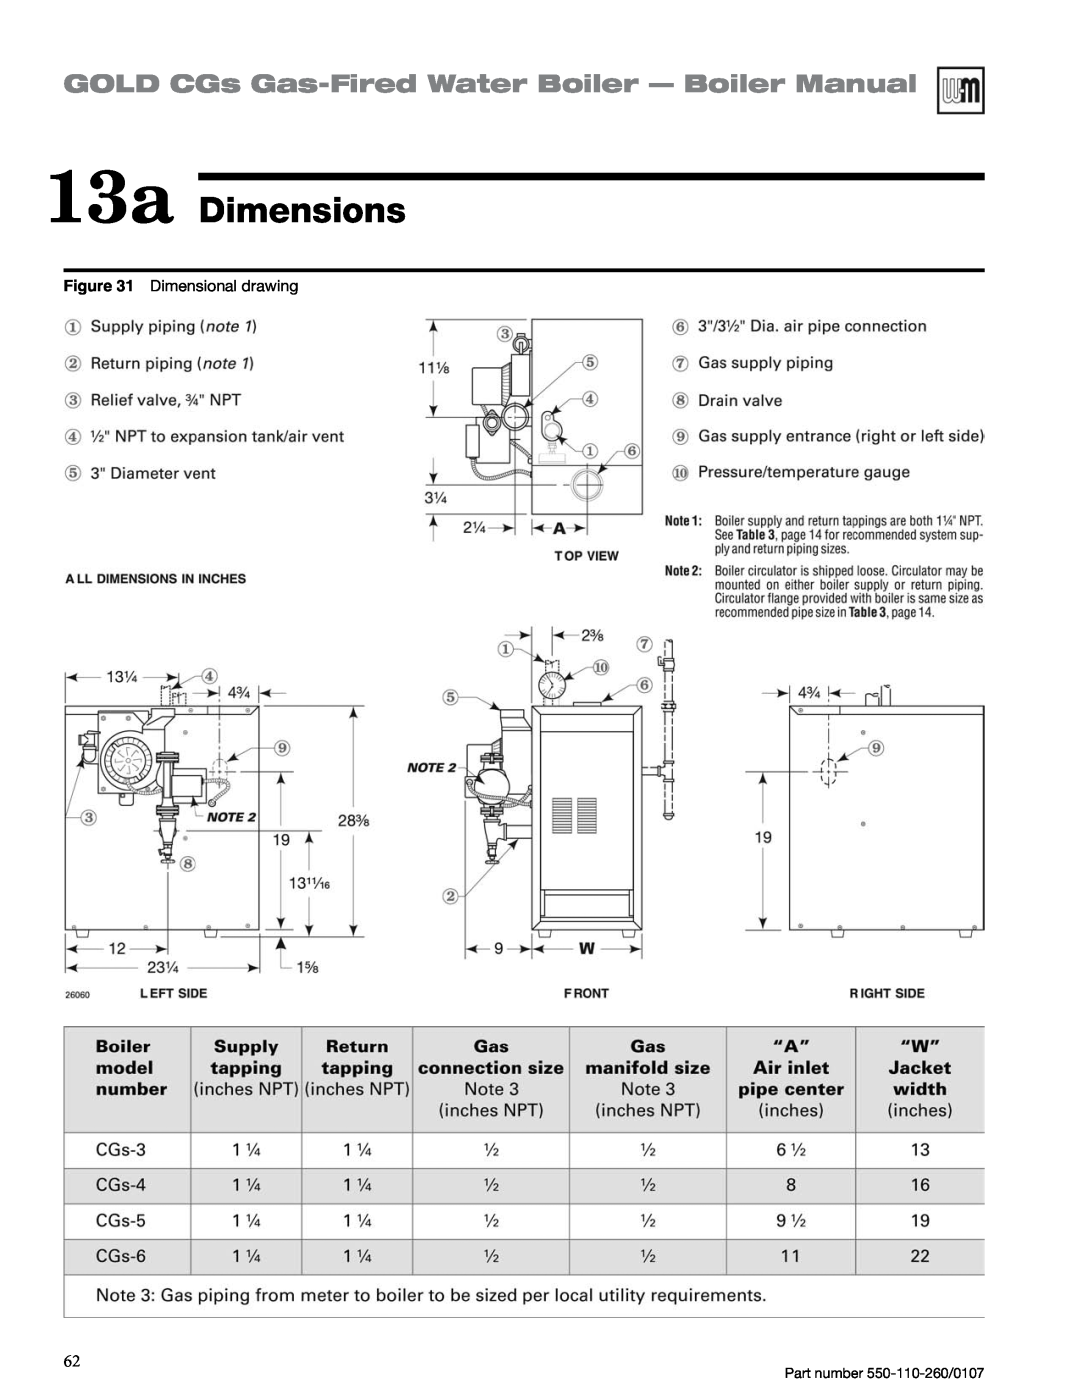 Weil-McLain 550-110-260/0107 manual 13a Dimensions, GOLD CGs Gas-FiredWater Boiler — Boiler Manual, Dimensional drawing 